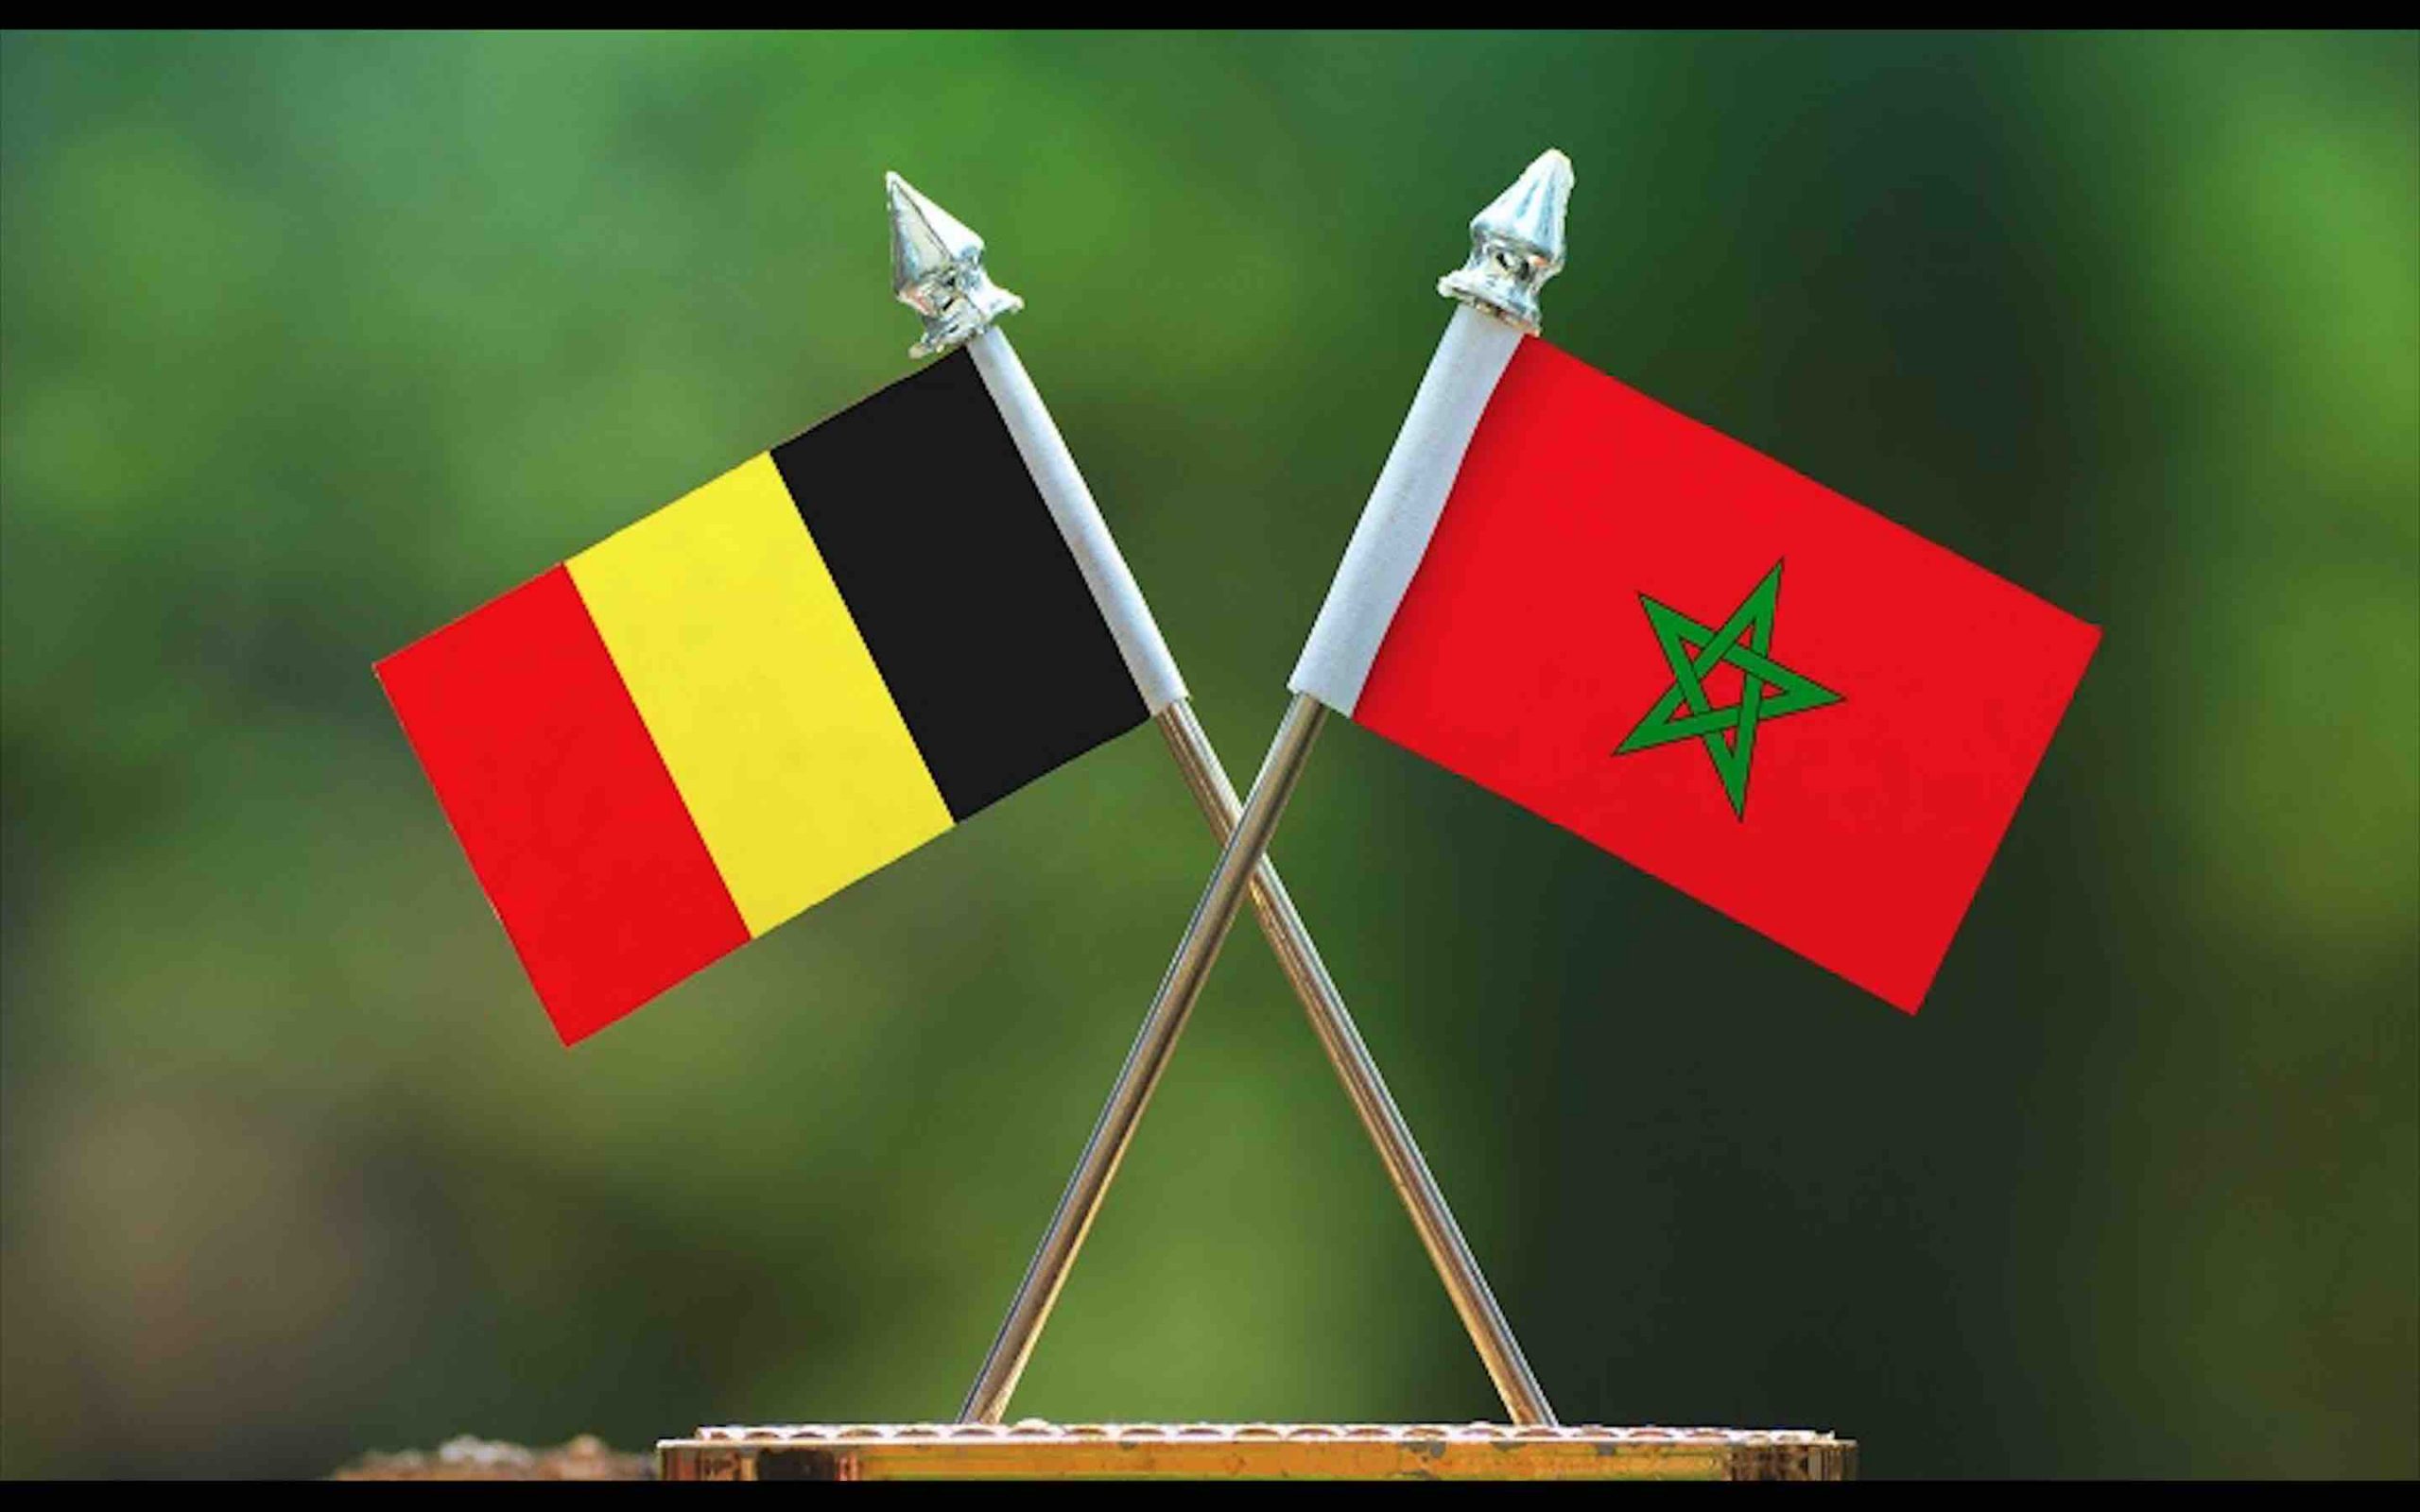 Coopération culturelle Maroc-Wallonie Bruxelles: lancement d'un appel à propositions